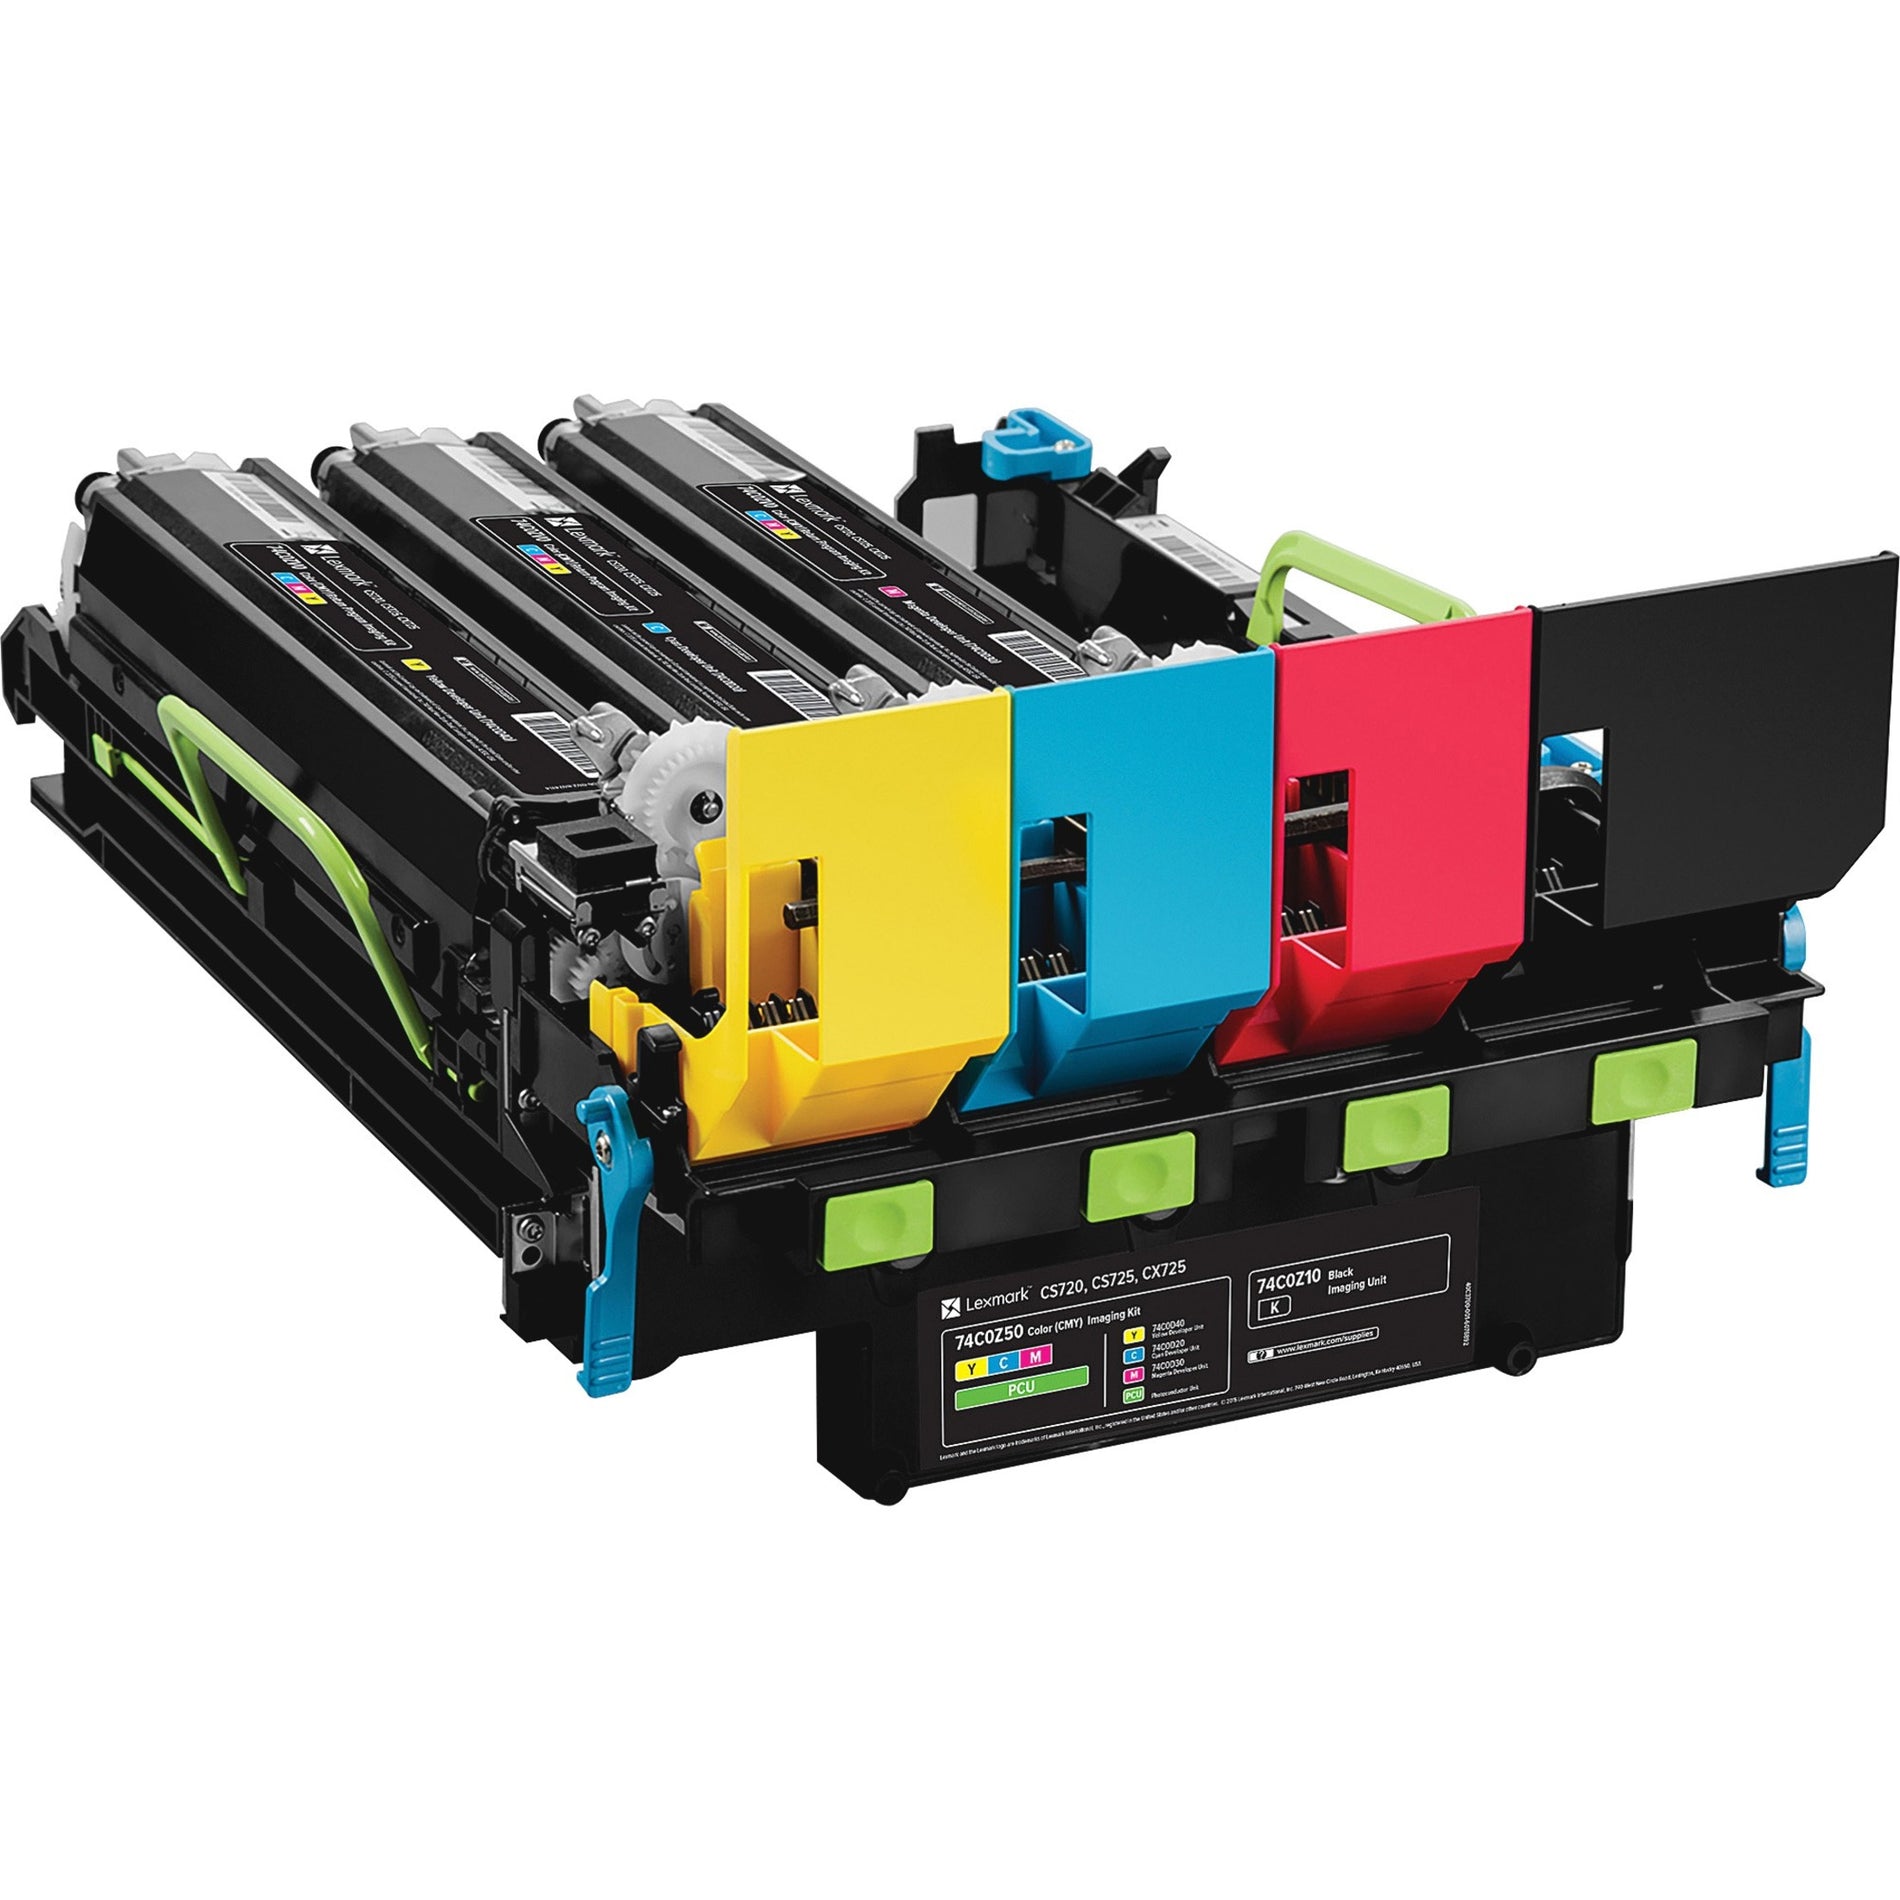 Lexmark Kit d'imagerie couleur (CMJ) CS720 CS725 CX725 74C0Z50 Laser Rendement d'impression de 150 000 pages